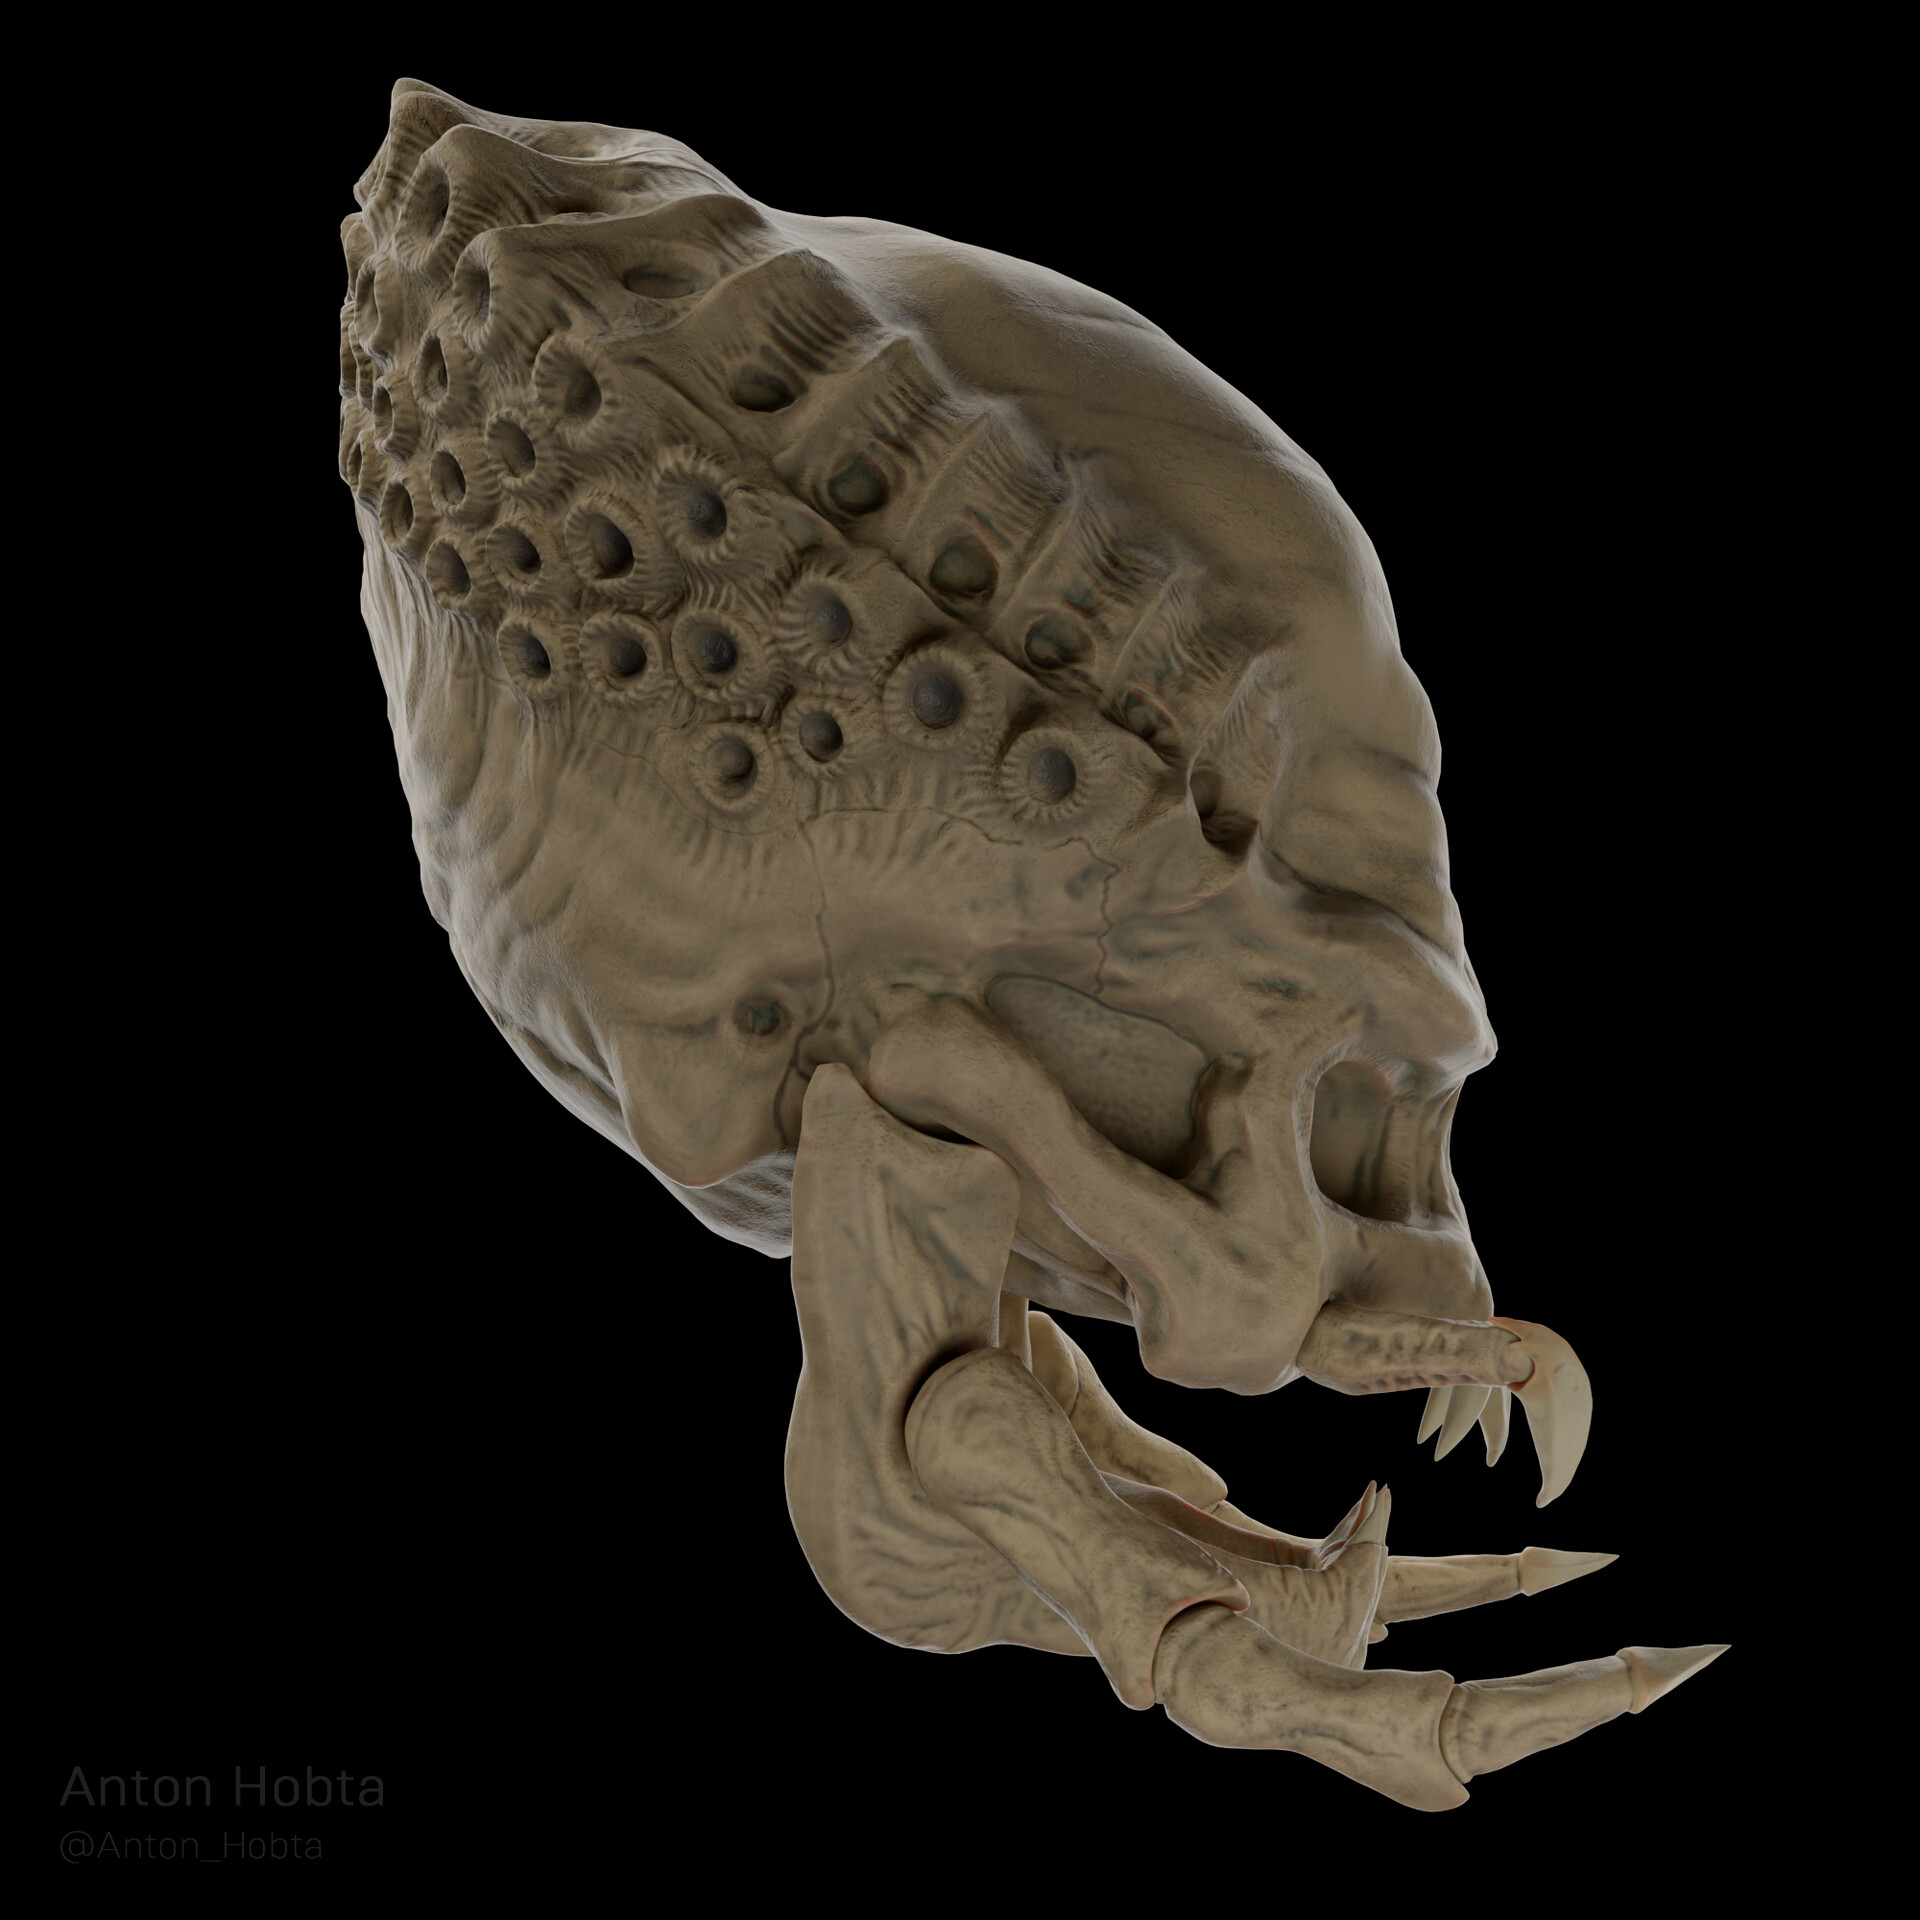 xenomorph skull in predator 2